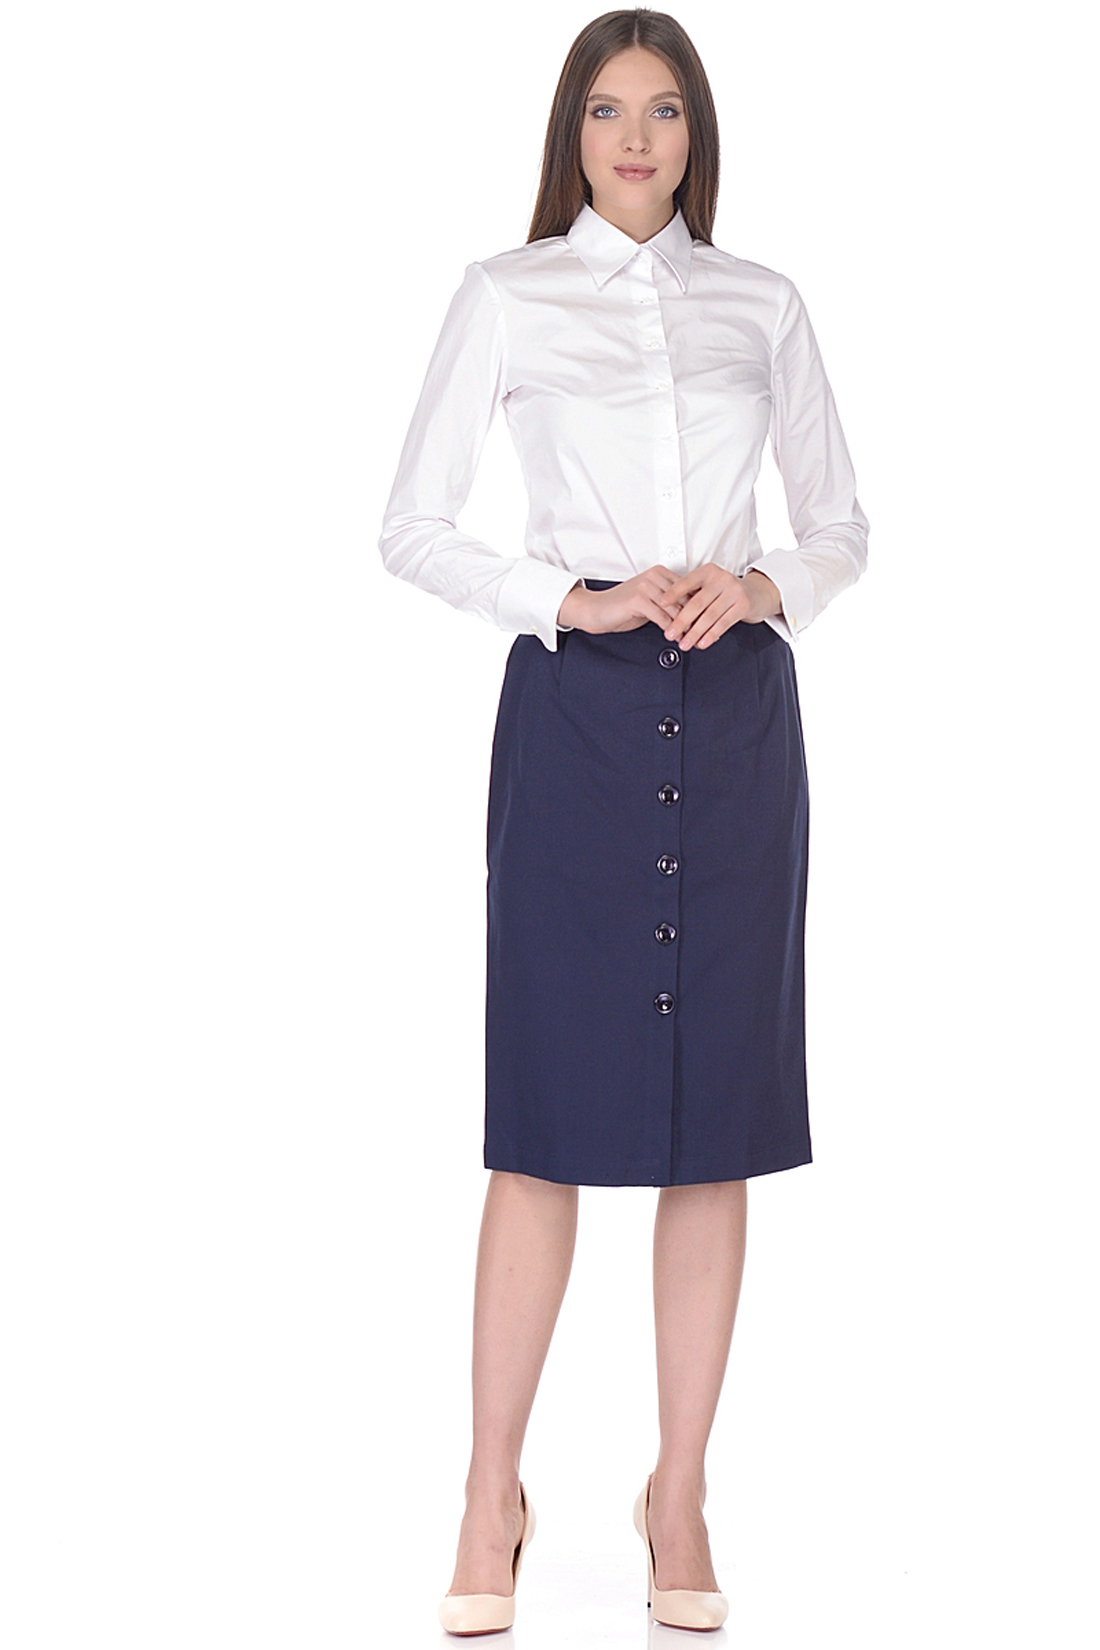 Классическая юбка с пуговицами (арт. baon B478007), размер XXL, цвет синий Классическая юбка с пуговицами (арт. baon B478007) - фото 1